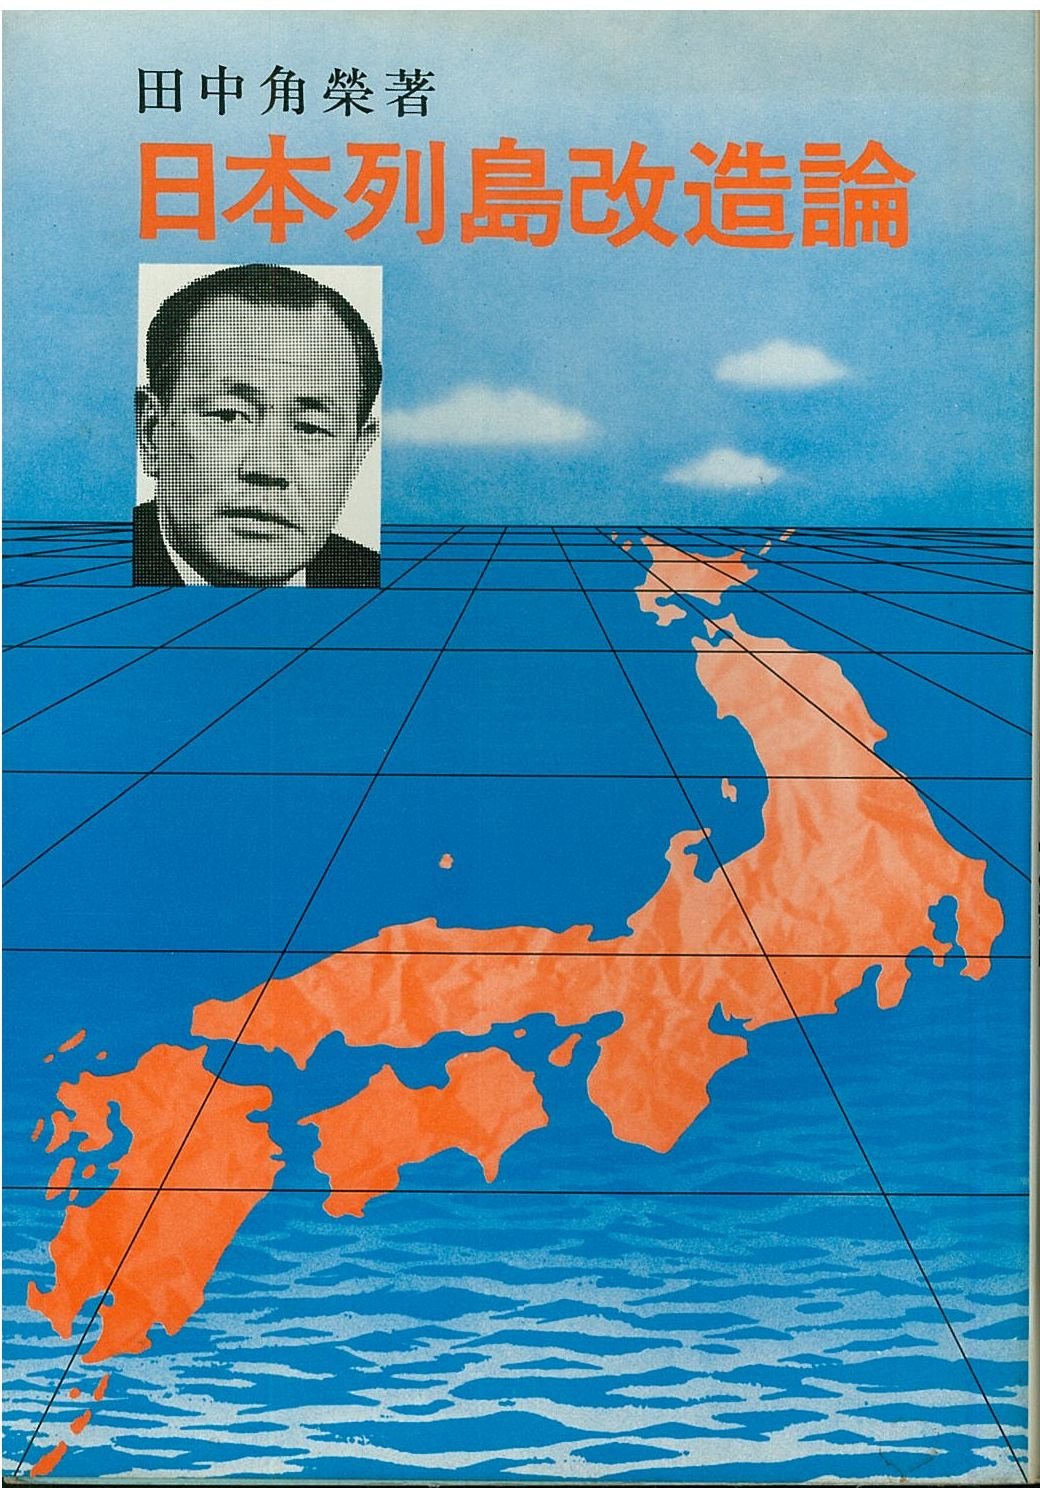 『日本列島改造論』